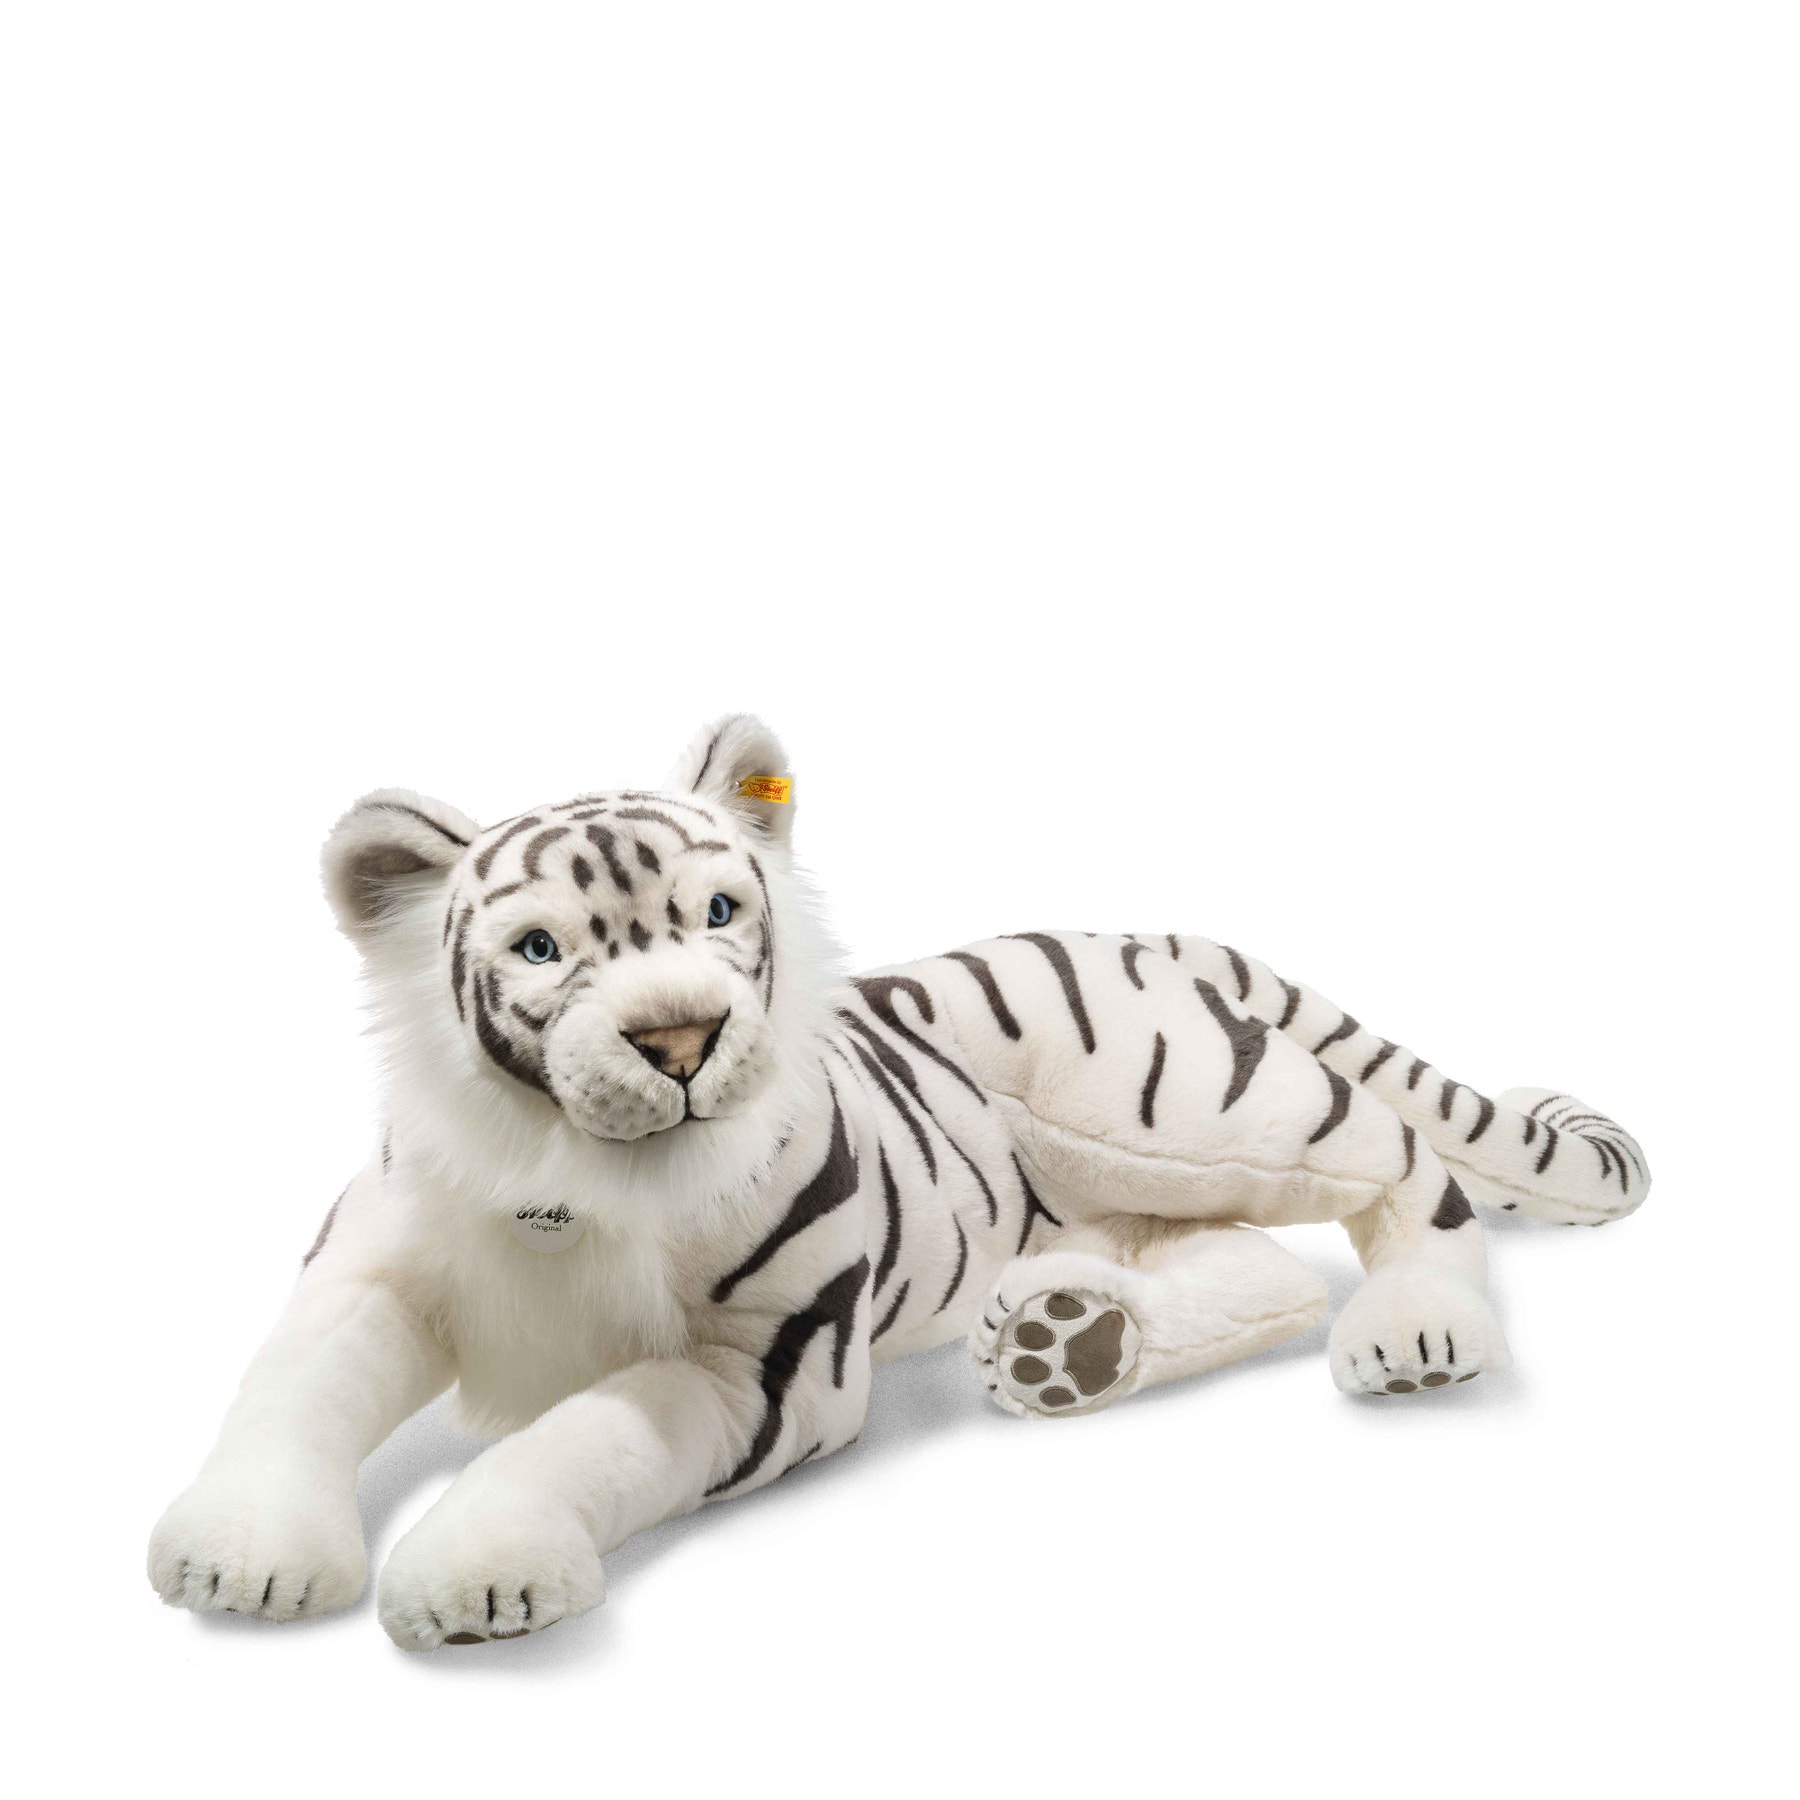 Tuhin, the white tiger